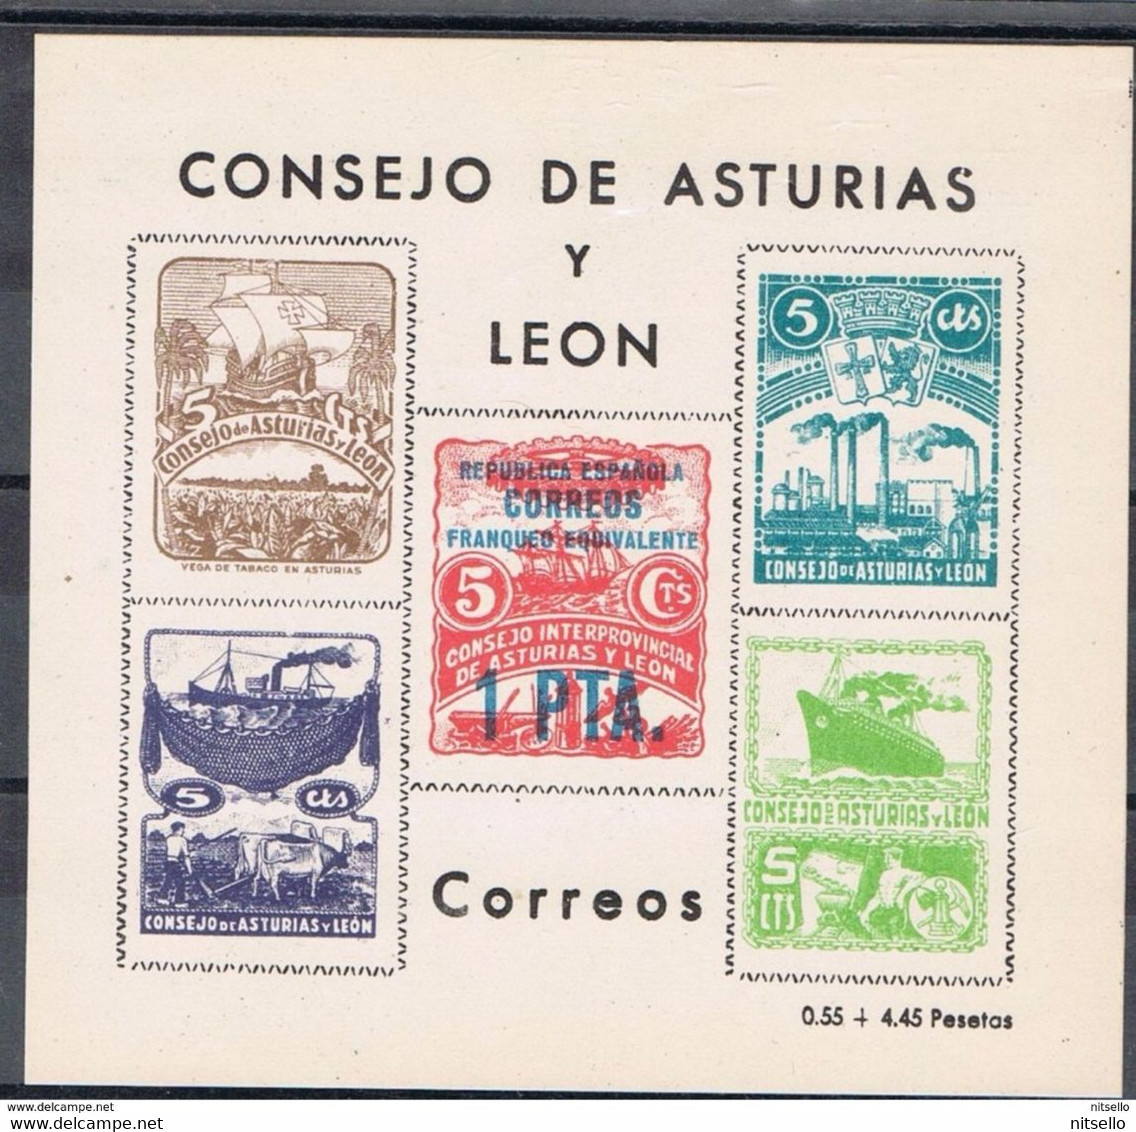 LOTE 1385  ///  CONSEJO DE ASTURIAS Y LEON          ¡¡¡¡¡¡ LIQUIDATION !!!!!!! - Asturien & Léon